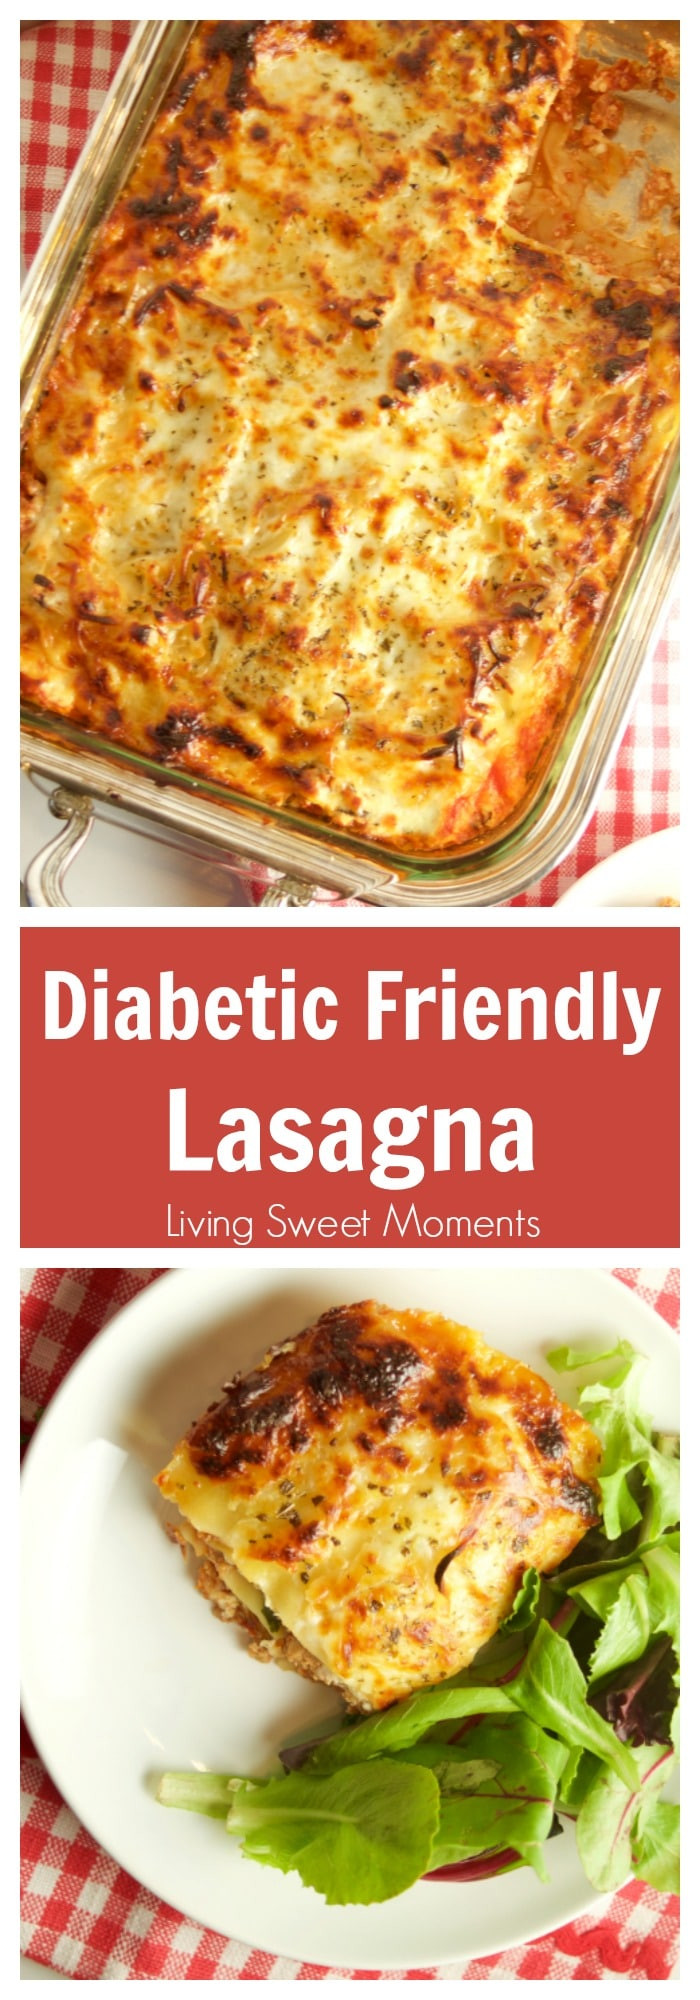 Diabetic Brunch Recipes
 Diabetic Lasagna Recipe Living Sweet Moments